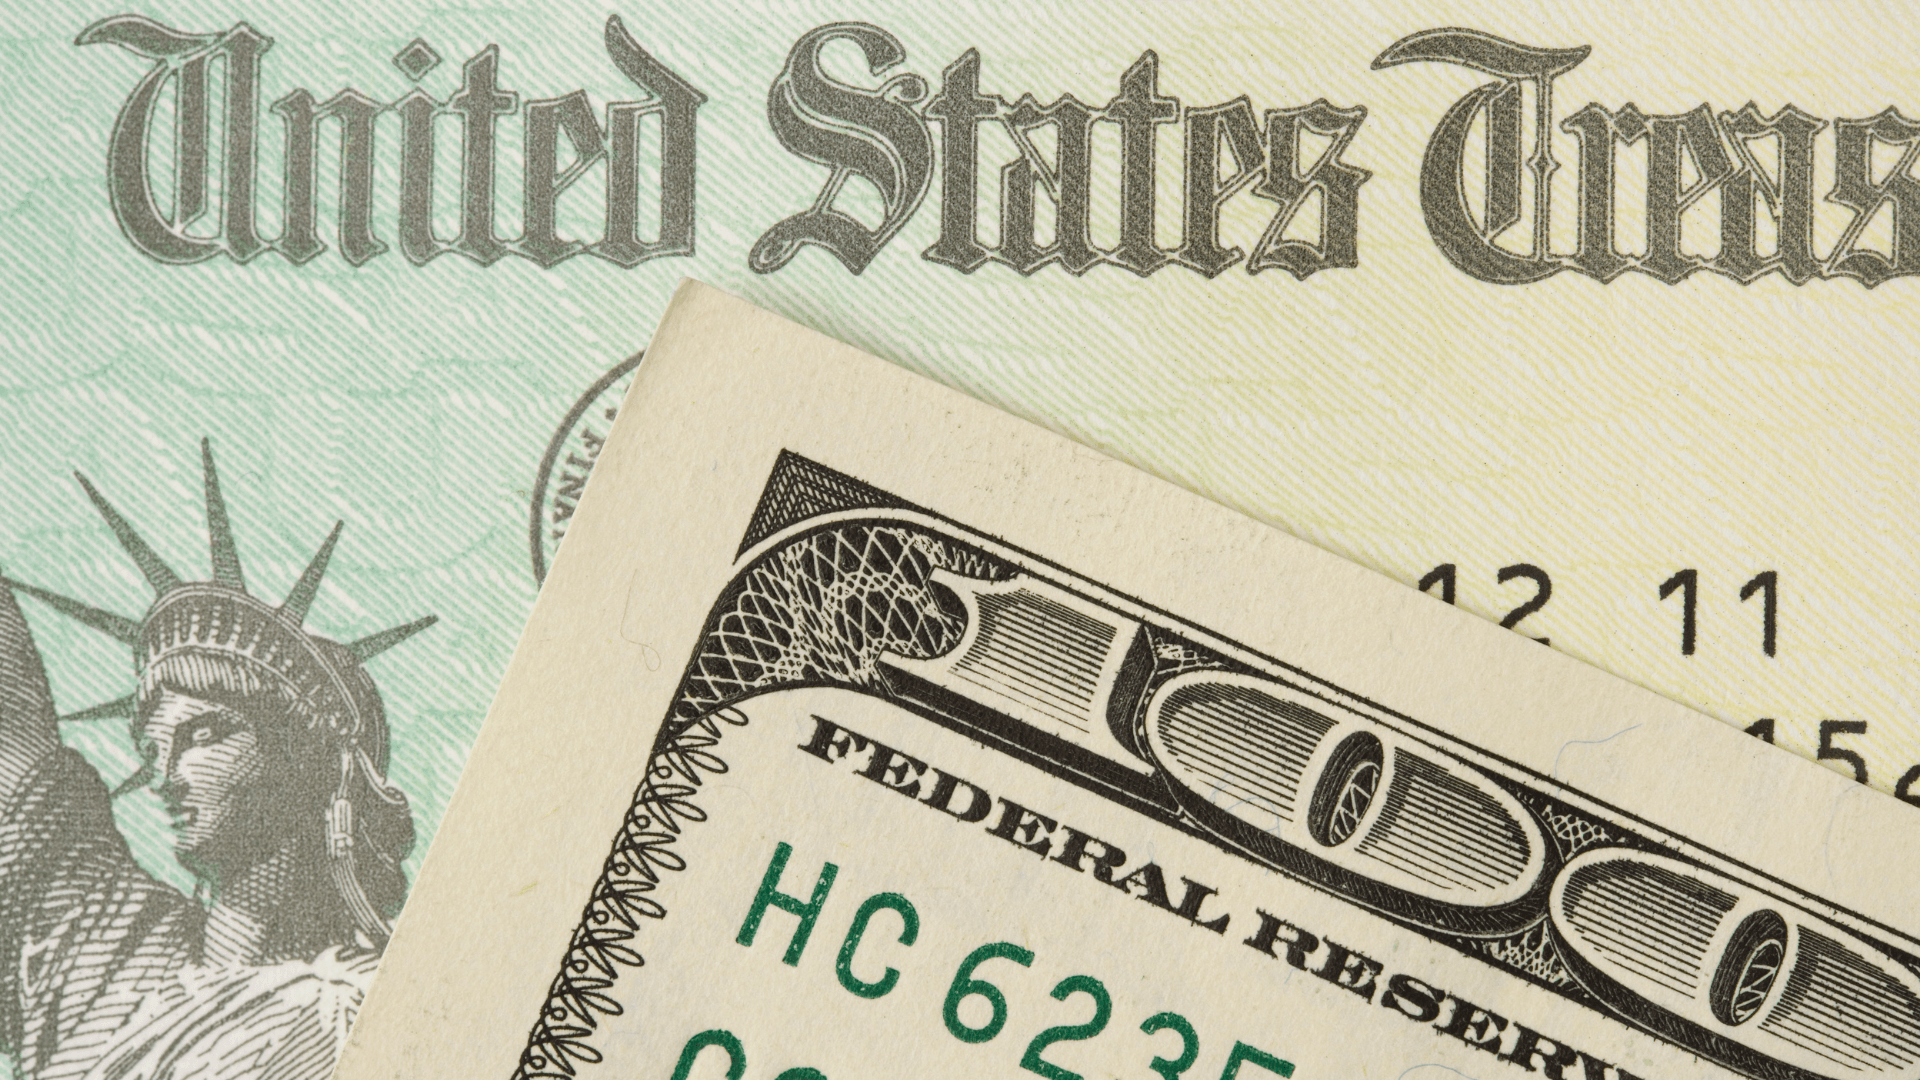 US Treasury Check behind a hundred dollar bill.